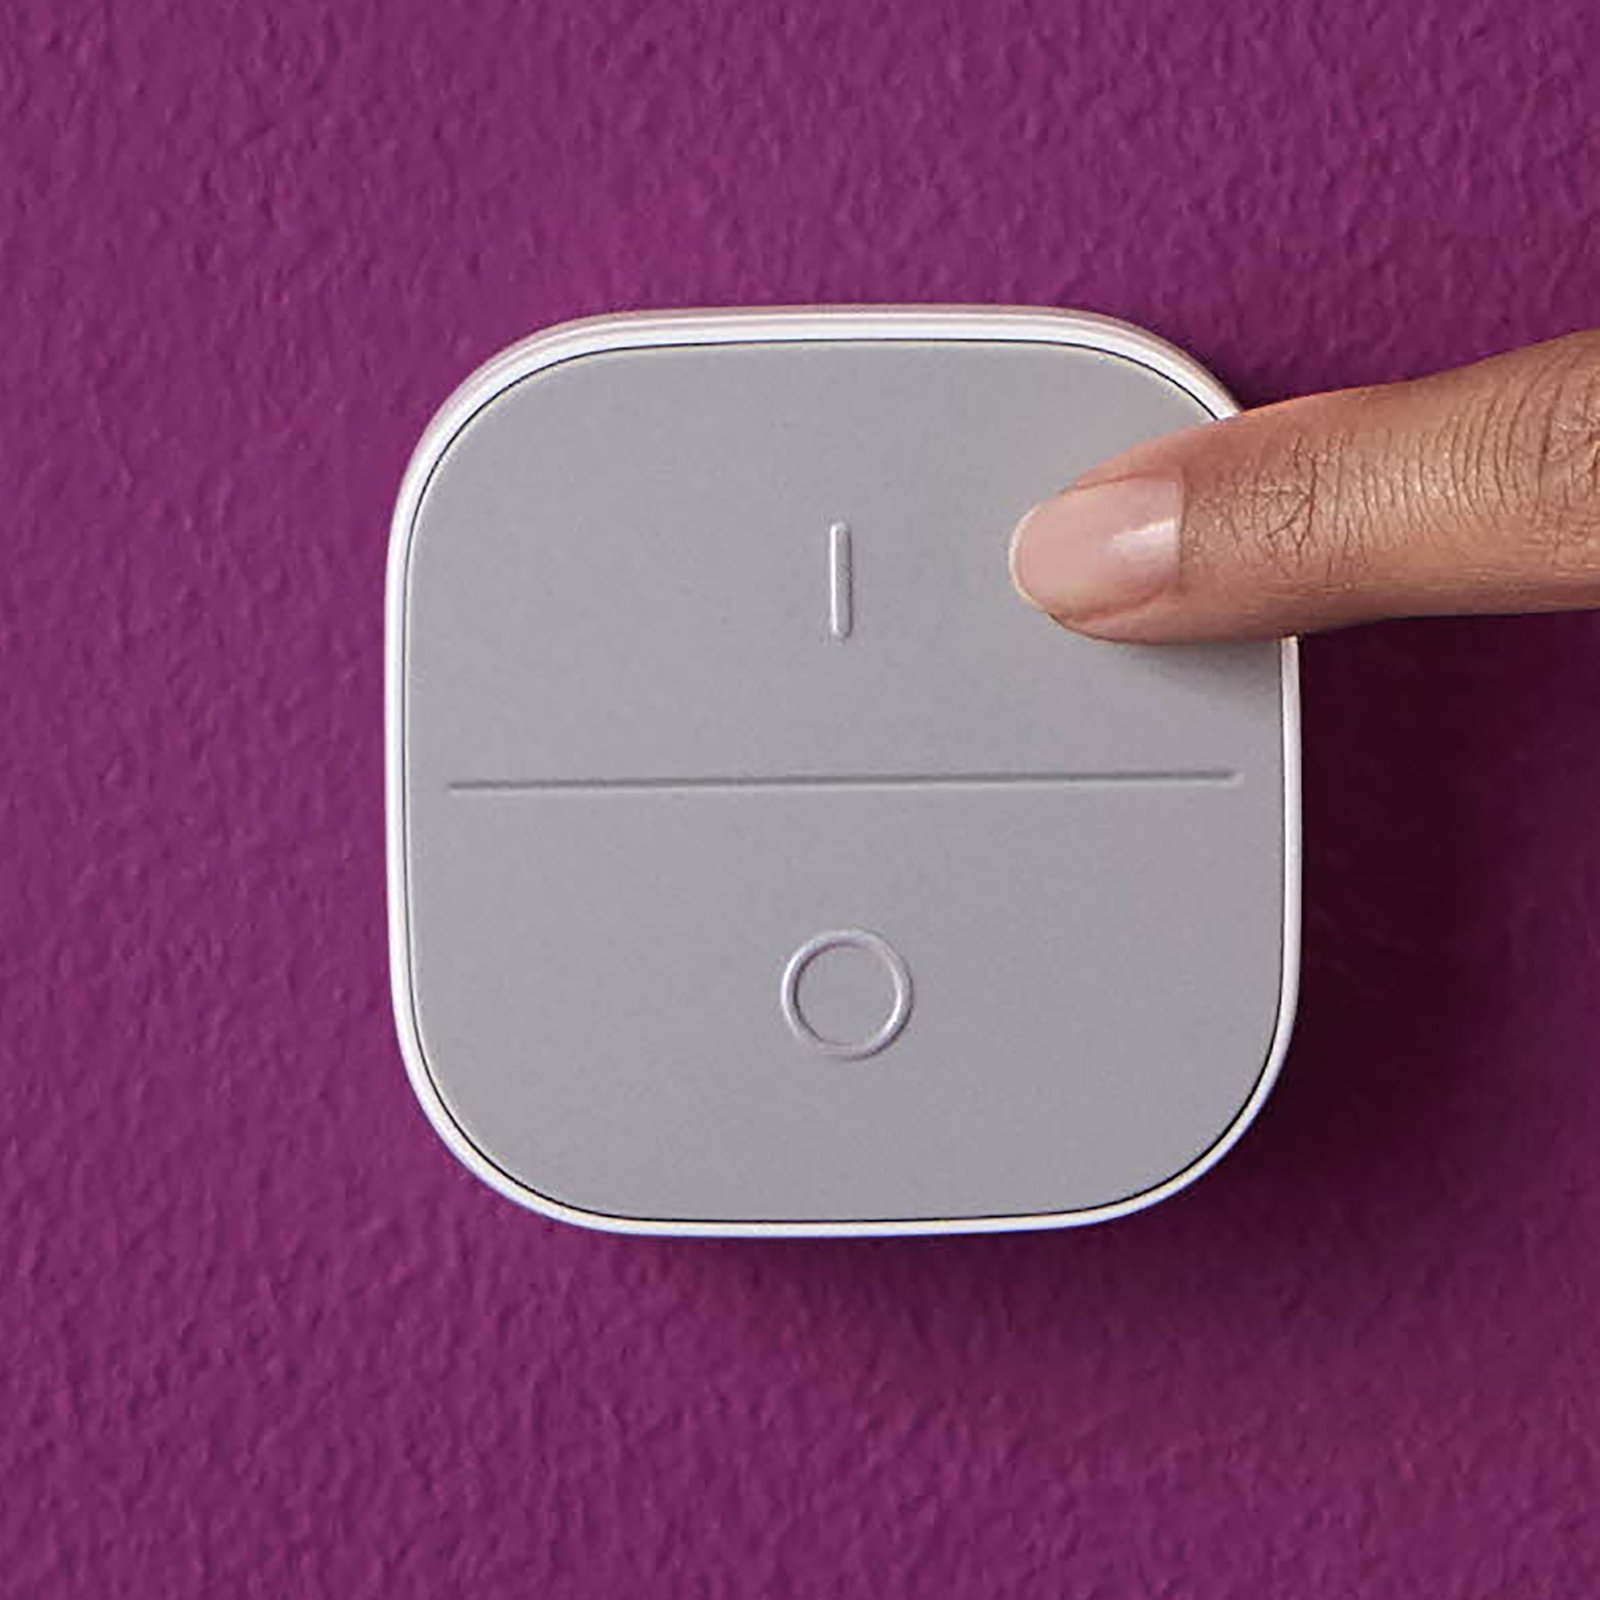 WiZ Portable Button, interruttore a parete mobile